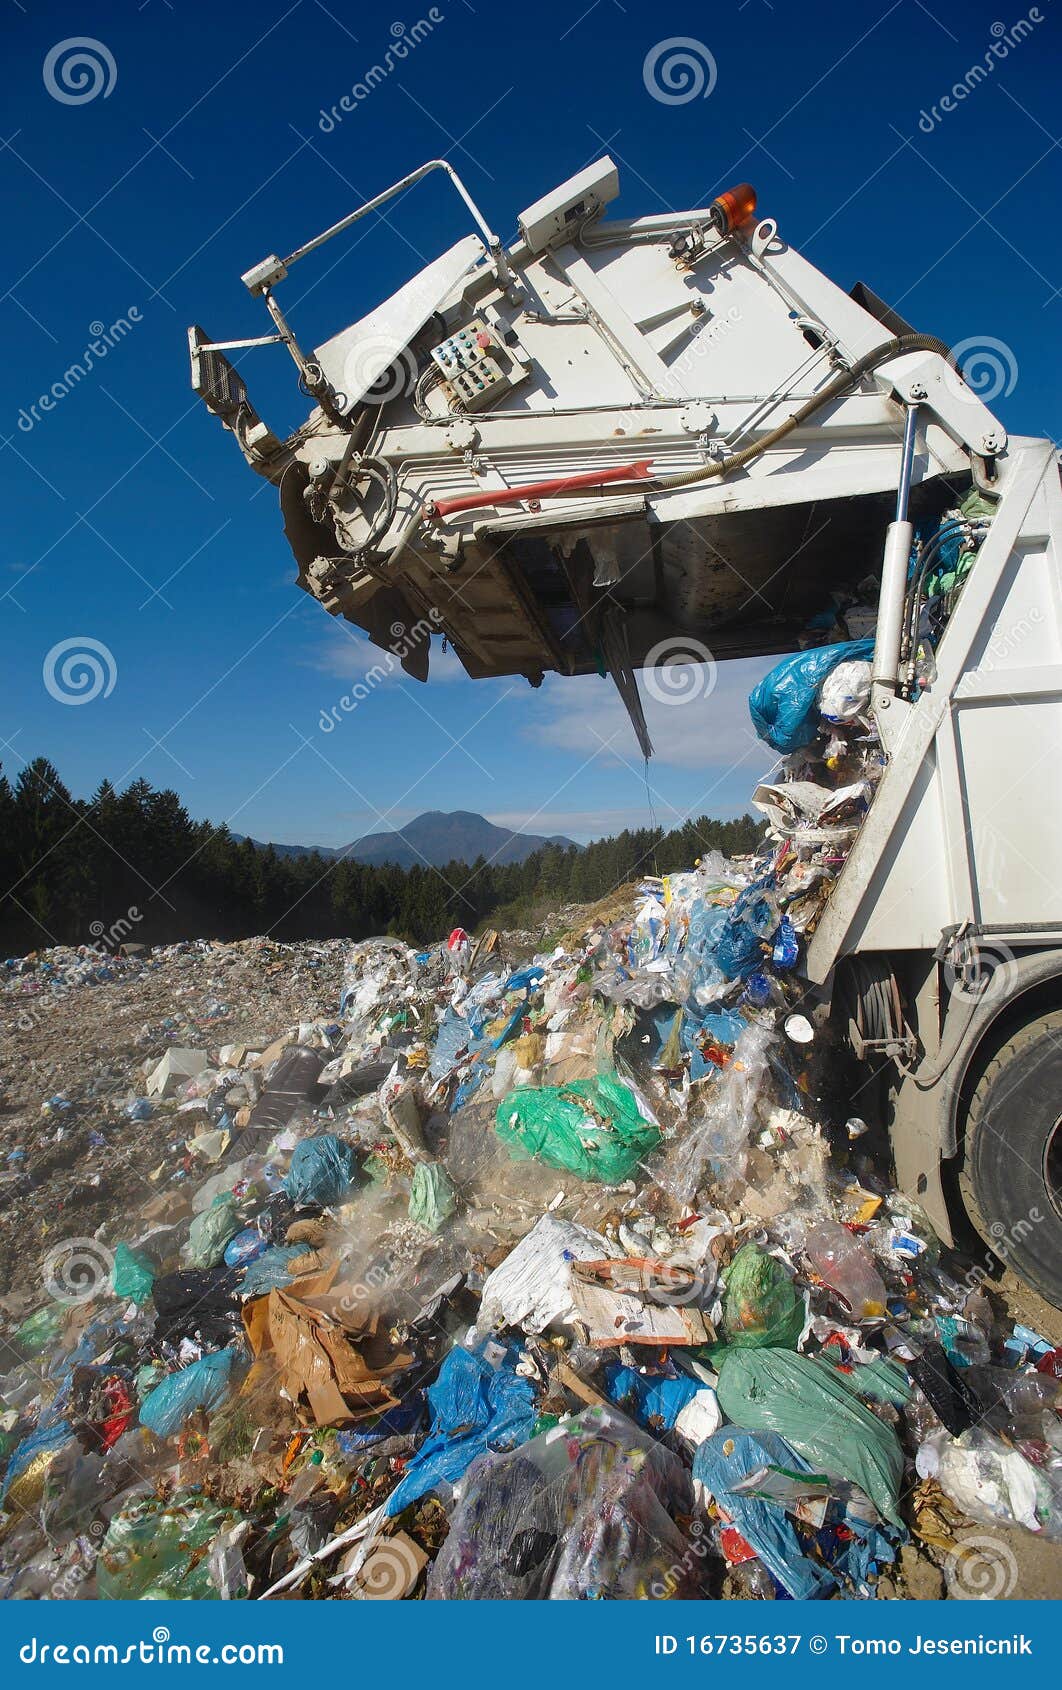 dumping truck